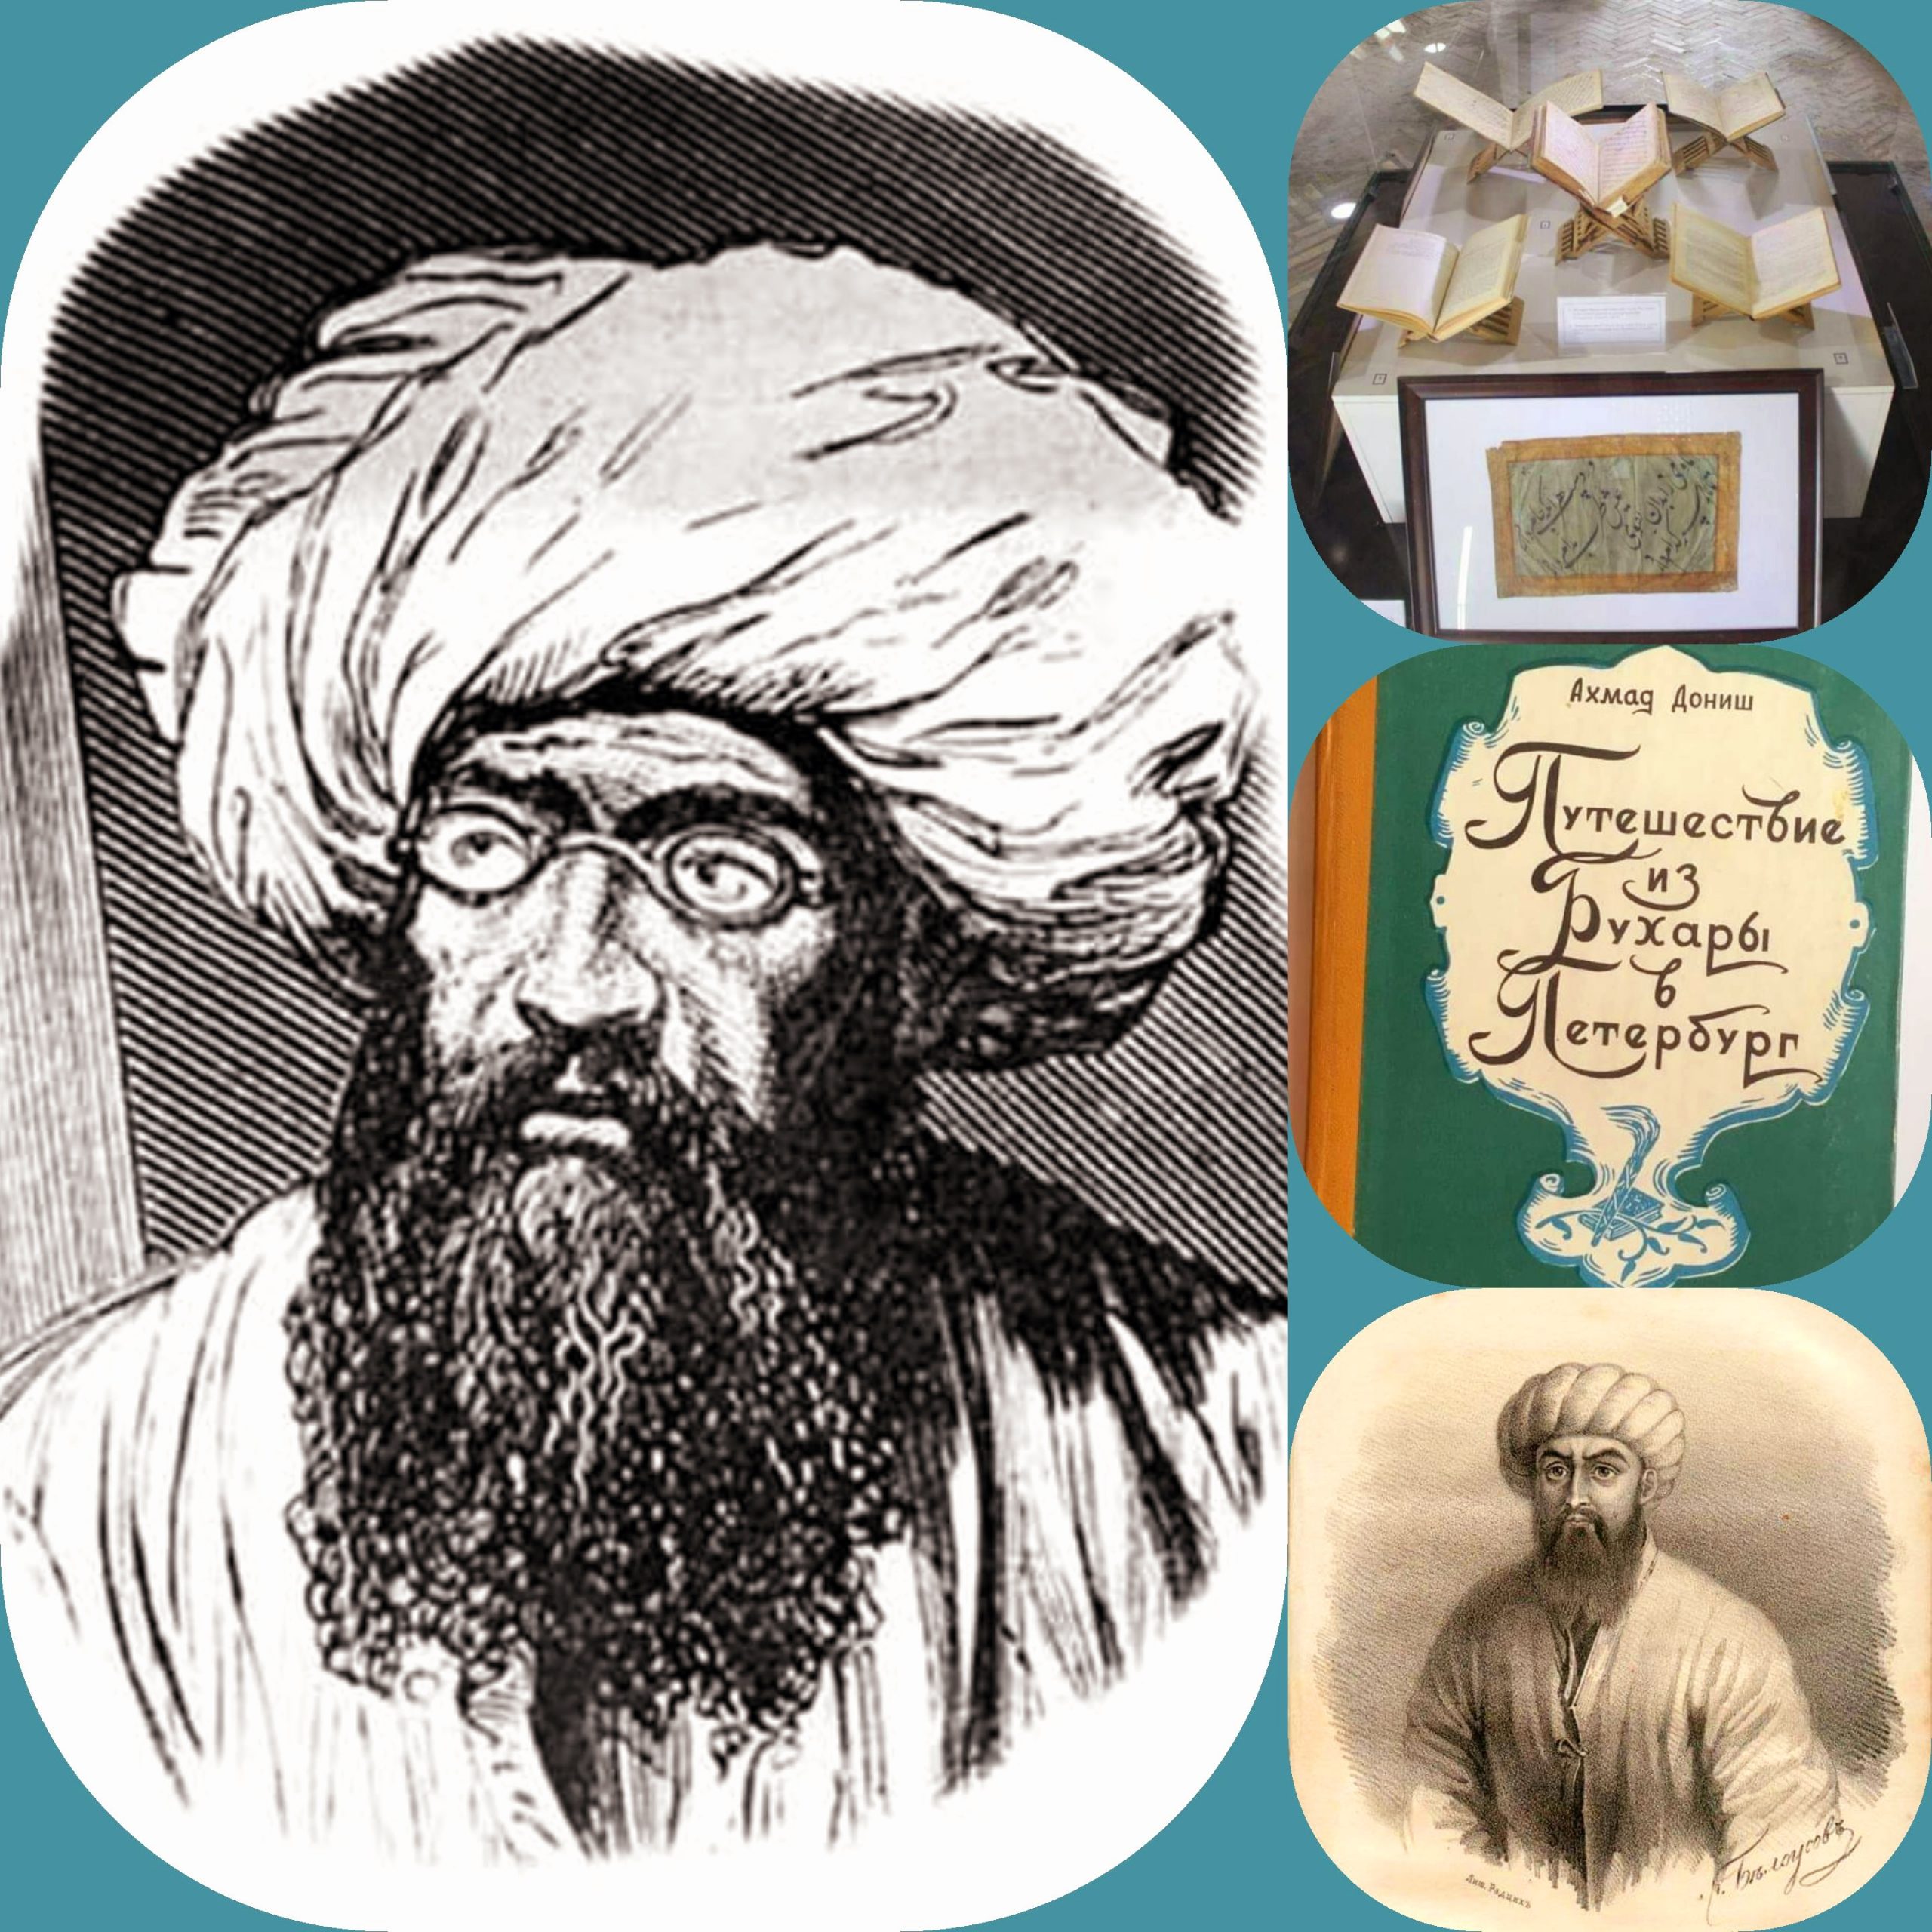 "أحمد دانش".. مفكر طرح أفكار تحديثية ساهمت في خلق جيل مثقف في آسيا الوسطى نهاية القرن التاسع عشر